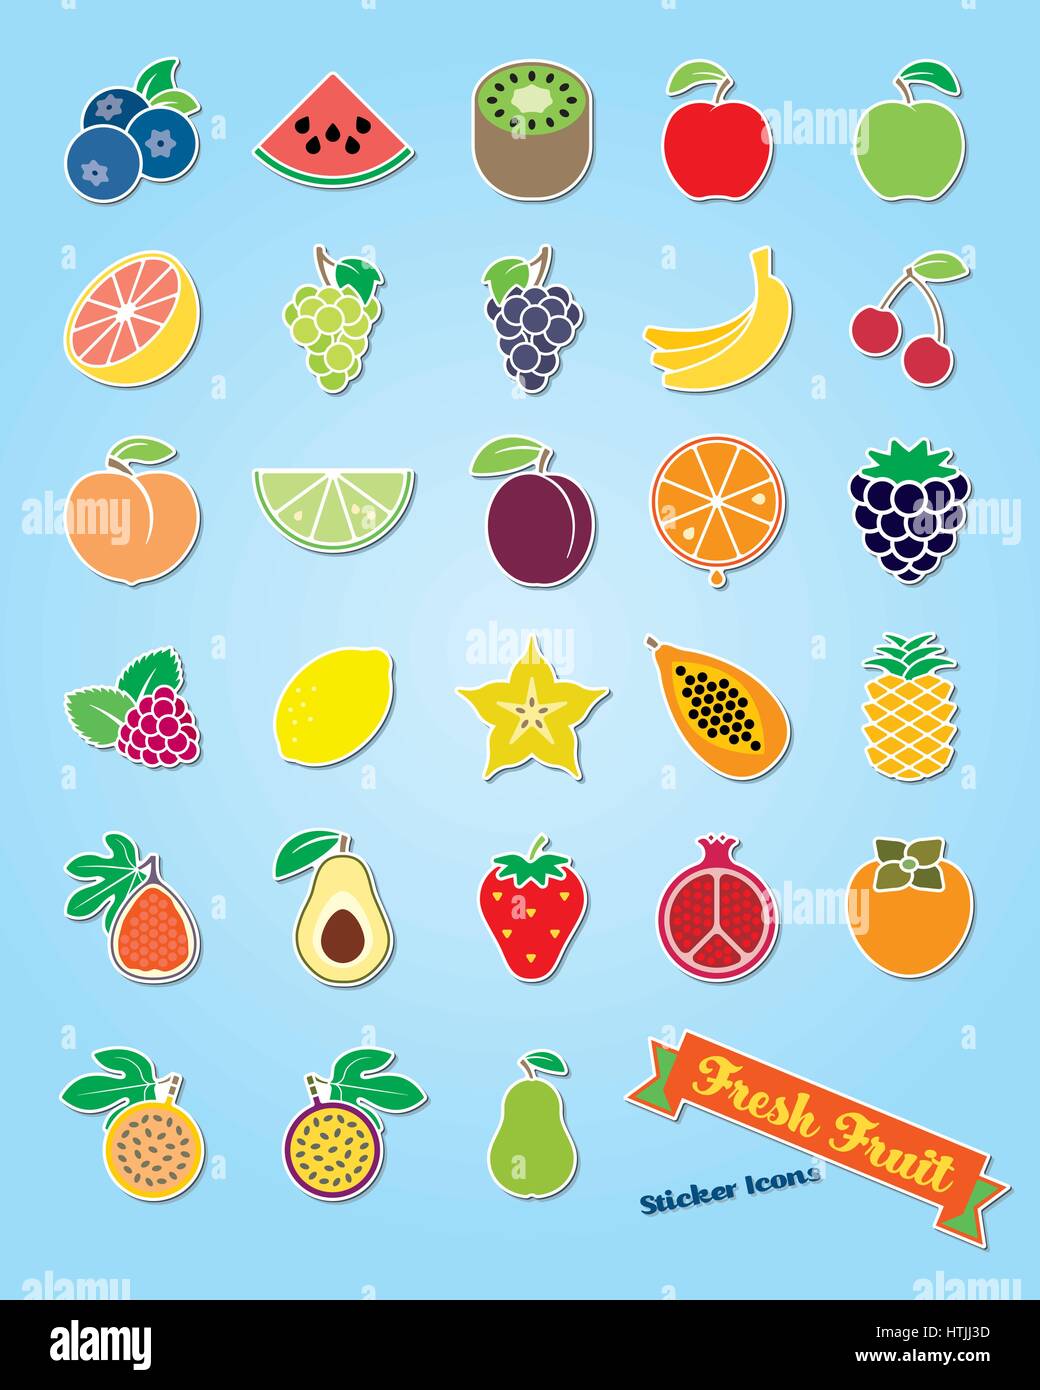 Collezione di 25 frutta fresca Adesivo delle icone Illustrazione Vettoriale